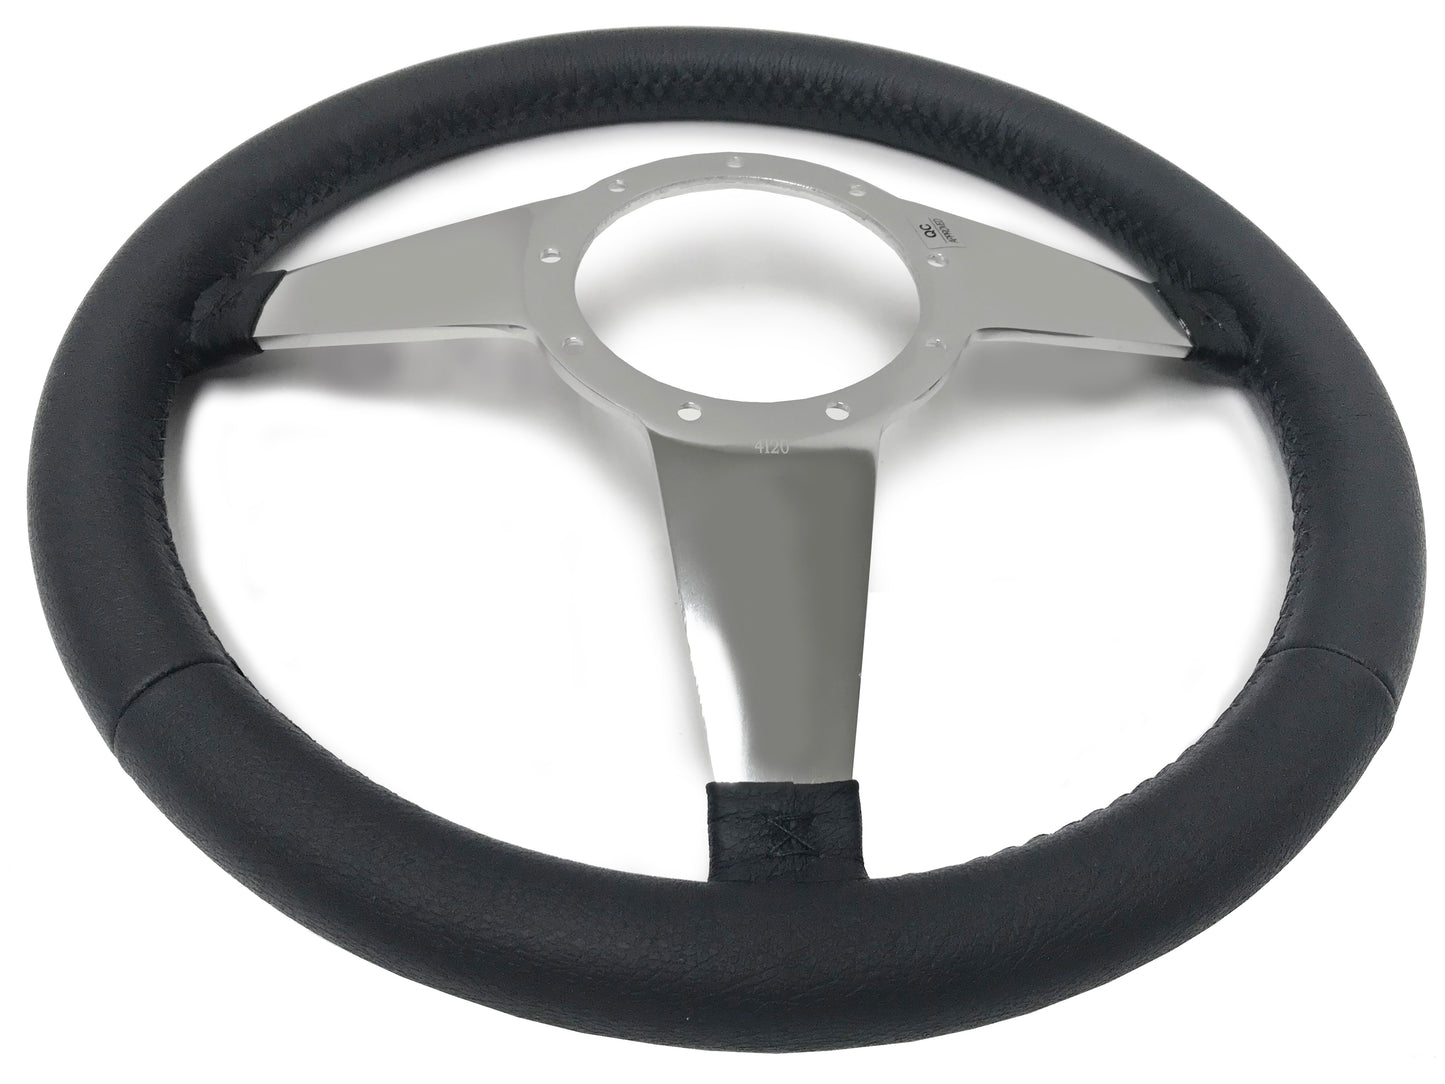 VSW 14" Black Leather Steering Wheel, 9-Bolt Billet Aluminum Spokes ST3087